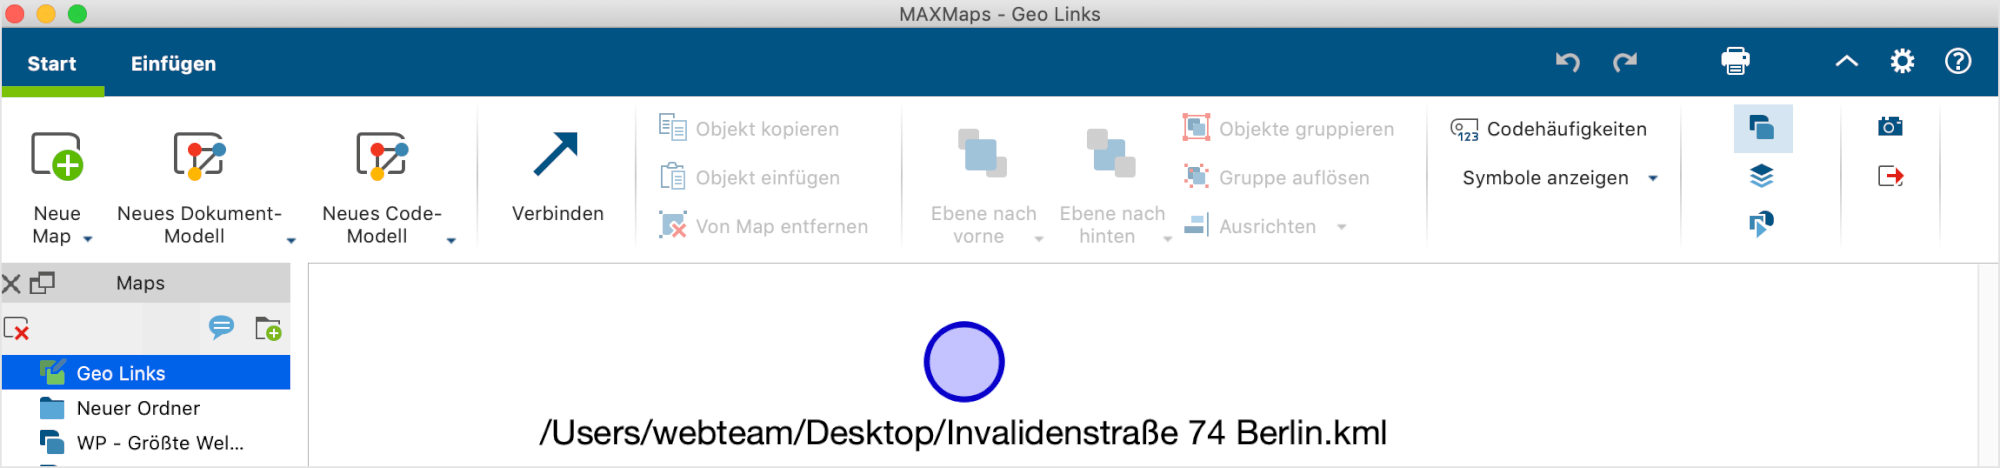 Ein neu eingefügter Geo-Link in MAXMaps